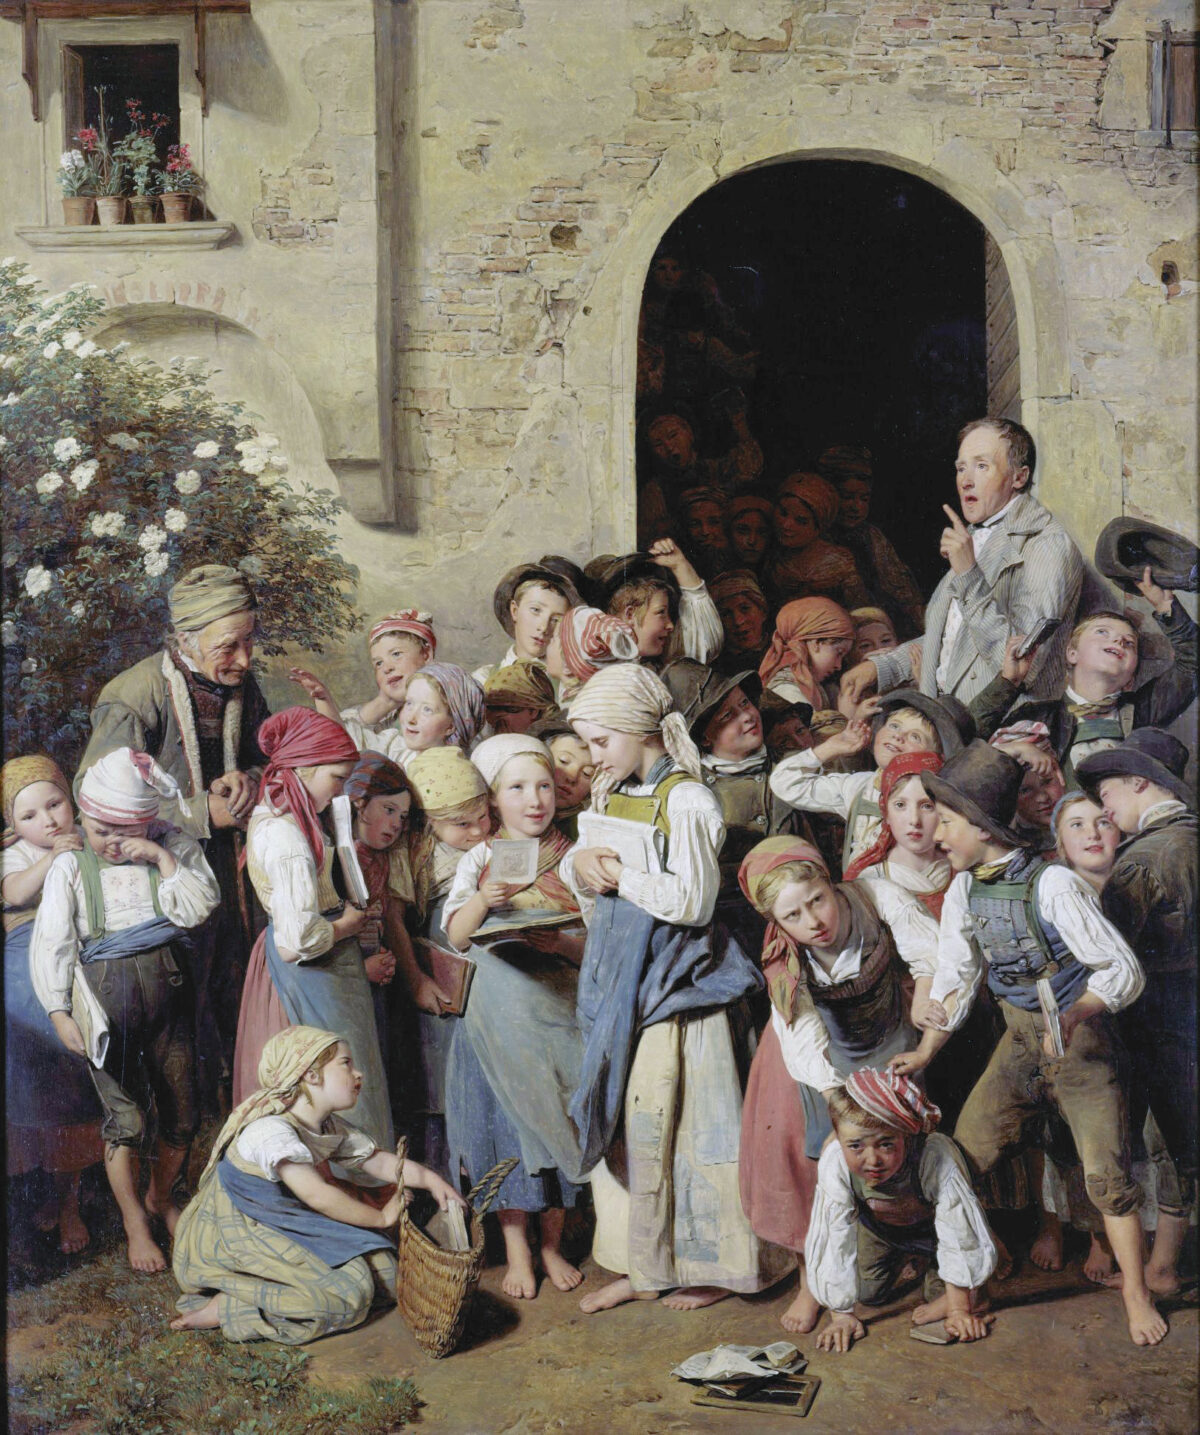 Tác phẩm “After School” (Sau giờ tan trường) của họa sĩ Ferdinand Georg Waldmüller, năm 1841. Tranh sơn dầu trên gỗ; kích thước 29 1/2 inch x 24 3/8 inch. Phòng trưng bày nghệ thuật Old National, Berlin. (Ảnh: Tài sản công)